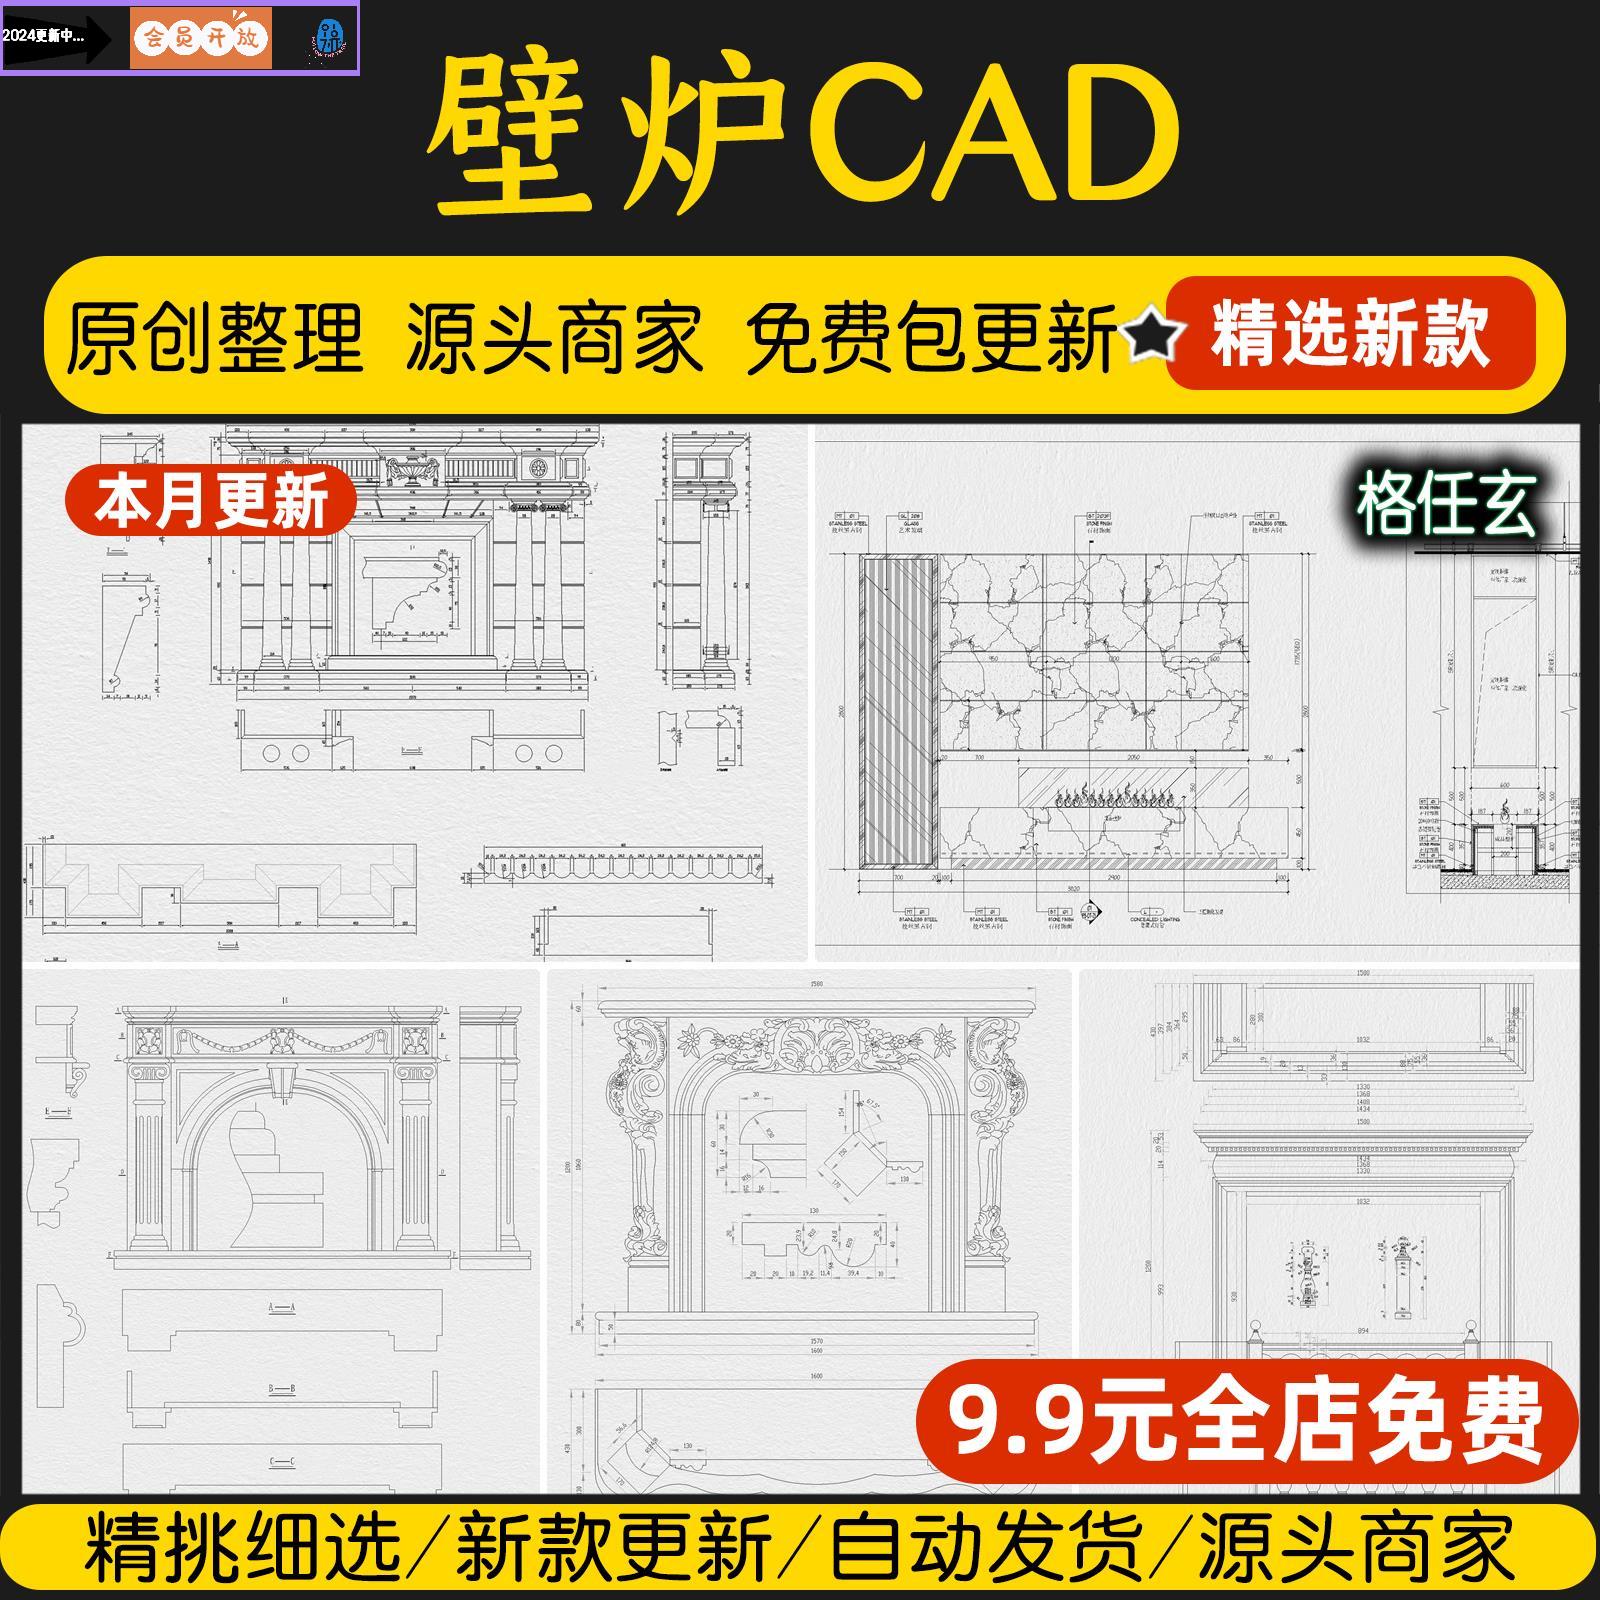 火焰壁炉极简欧式法式美式电视背景墙壁炉室内立面节点CAD施工图